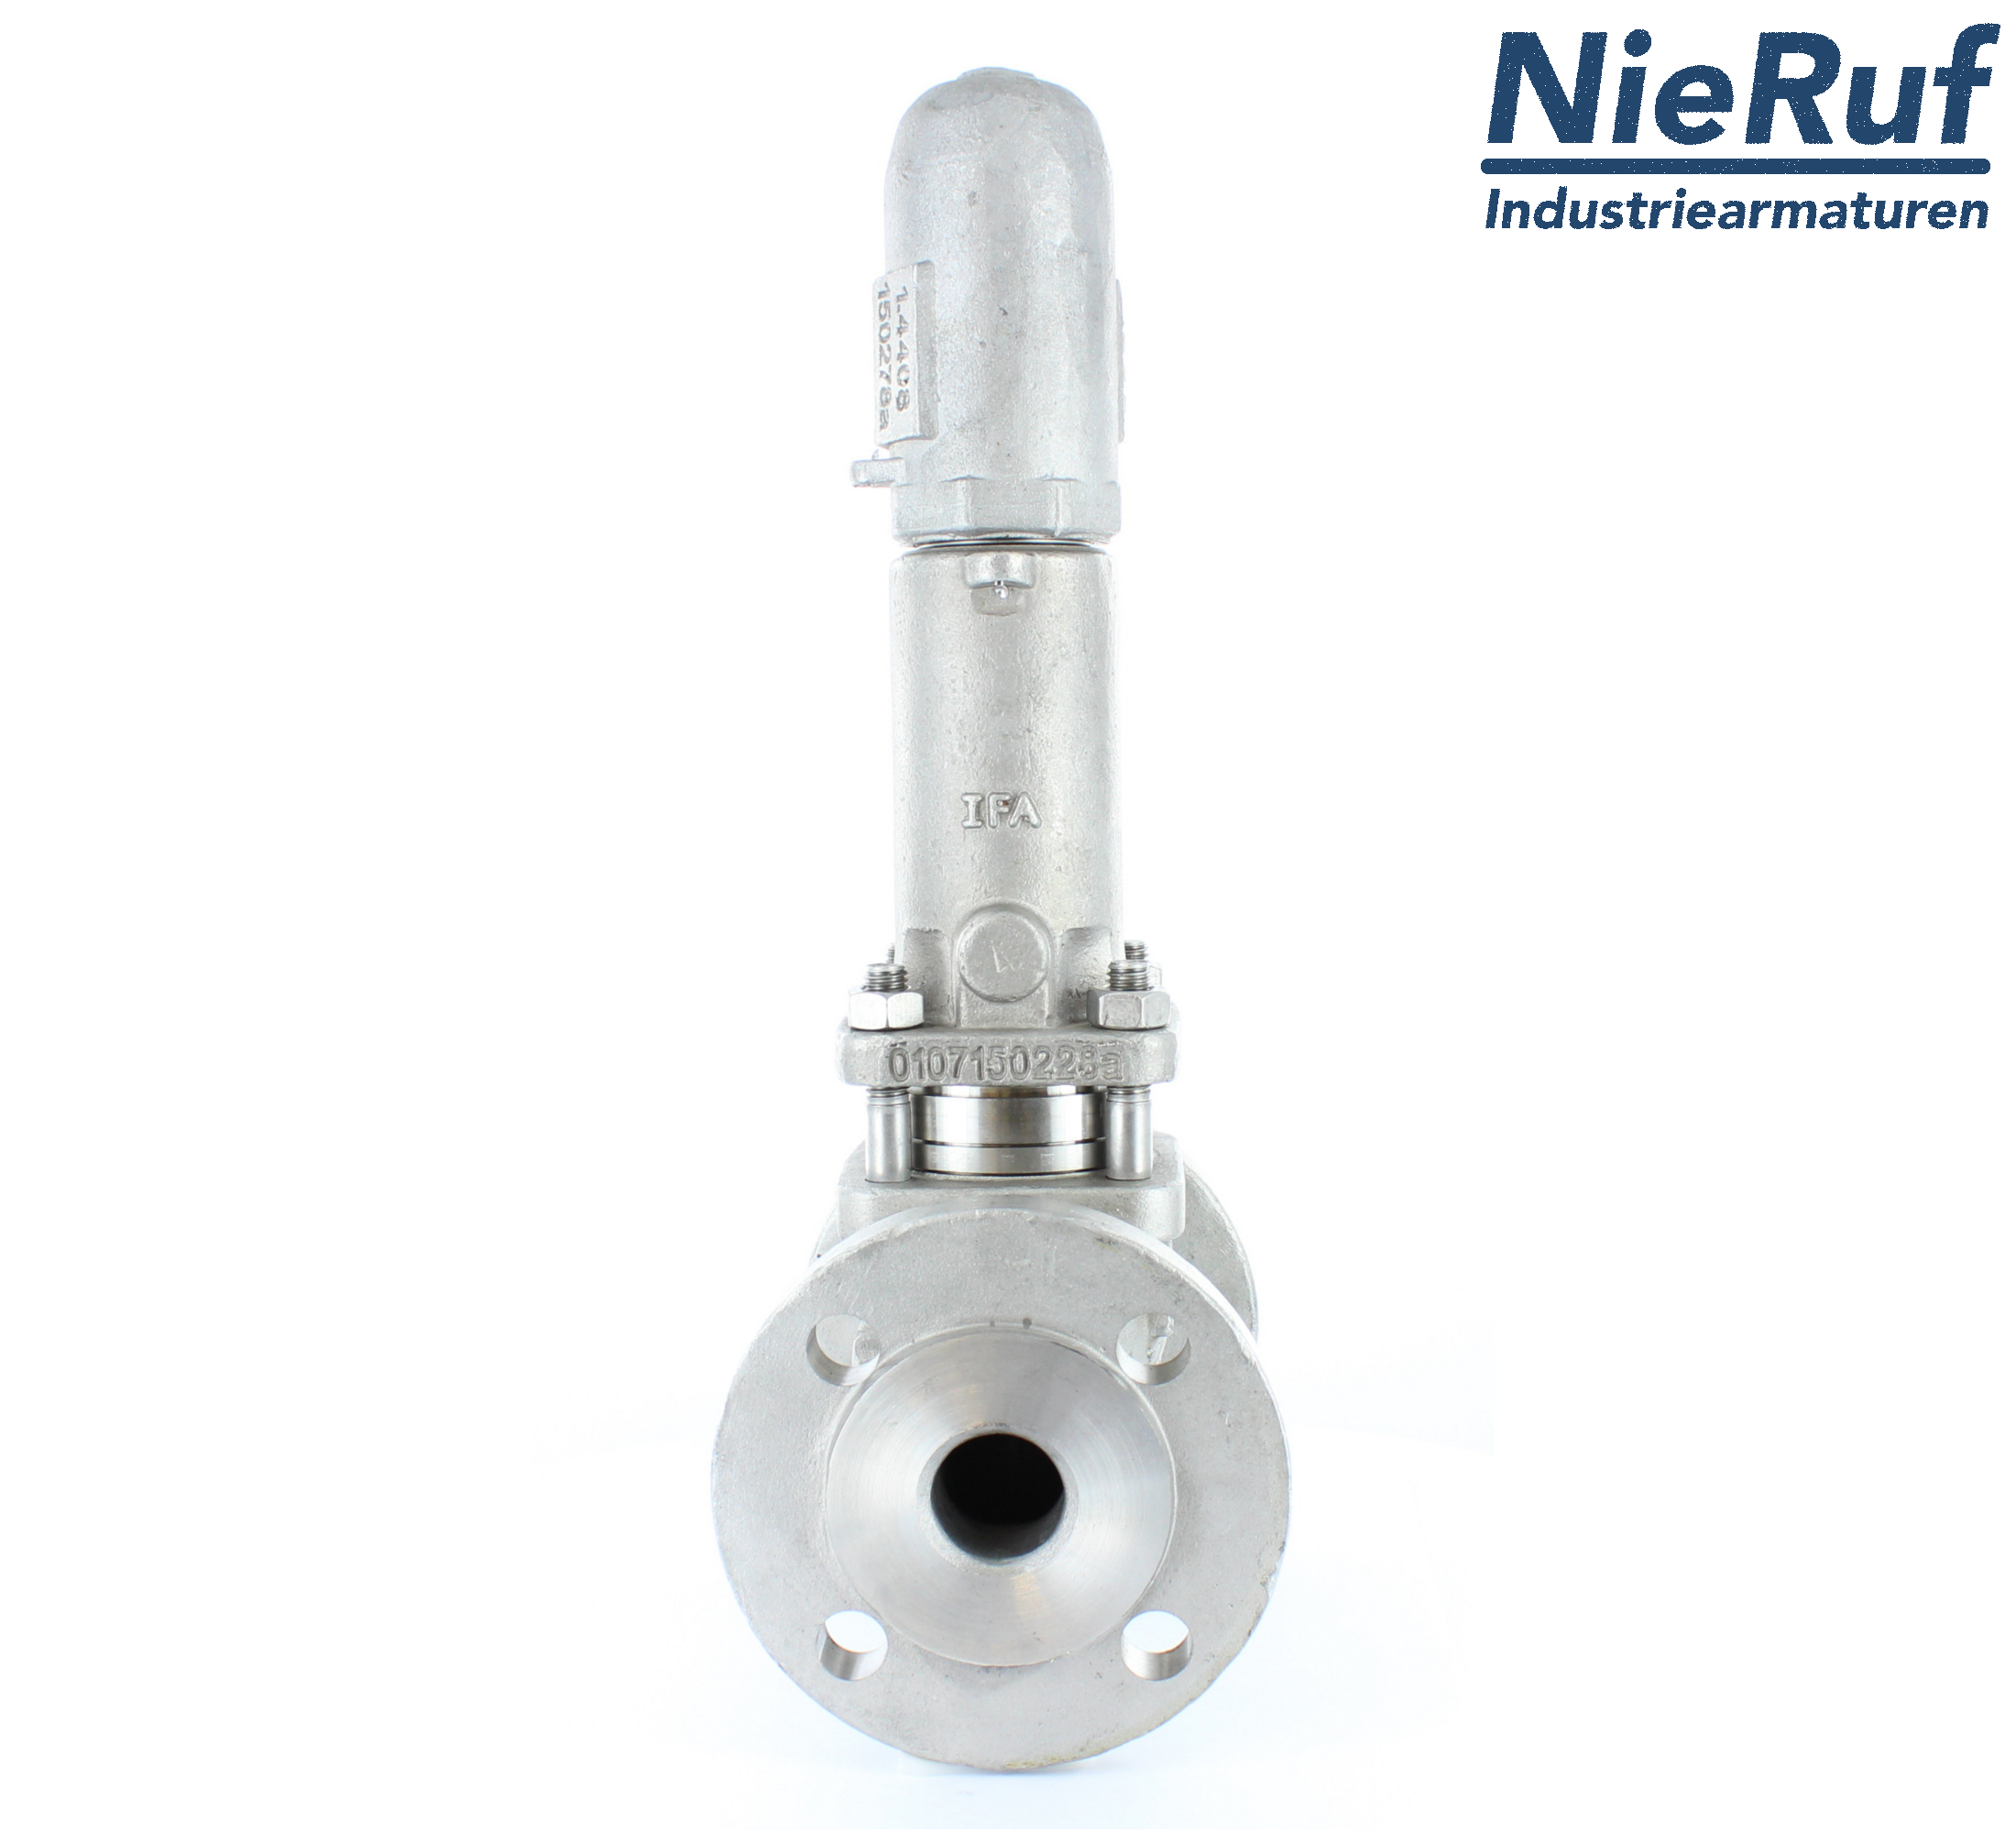 piston overflow valve DN 50 UV13 cast iron 1.0619+N 0,5 - 1,5 bar